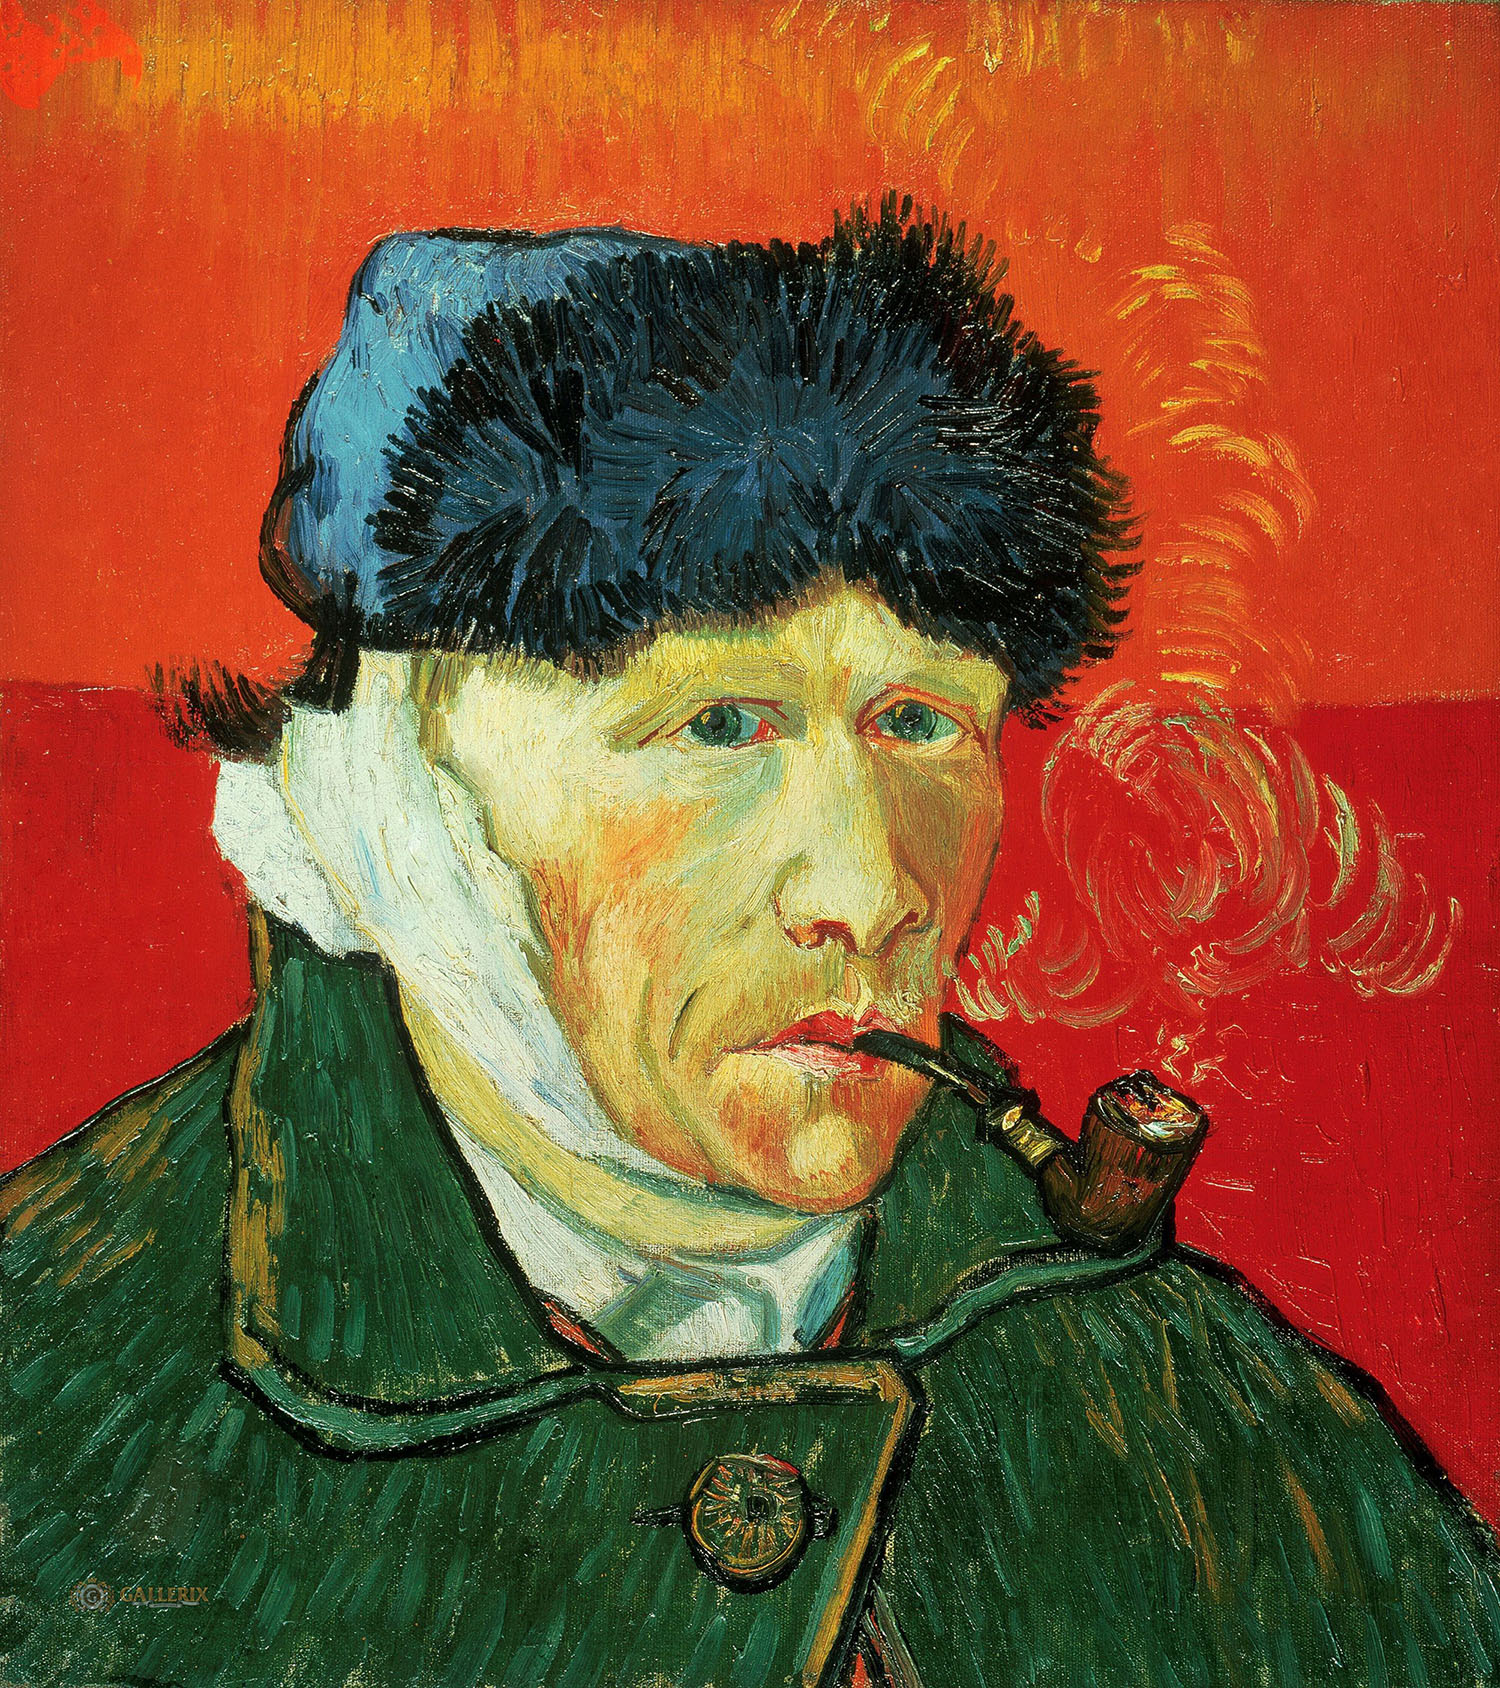 Винсент Ван Гог. "Автопортрет с перевязанным ухом и трубкой". 1889. Частная коллекция.